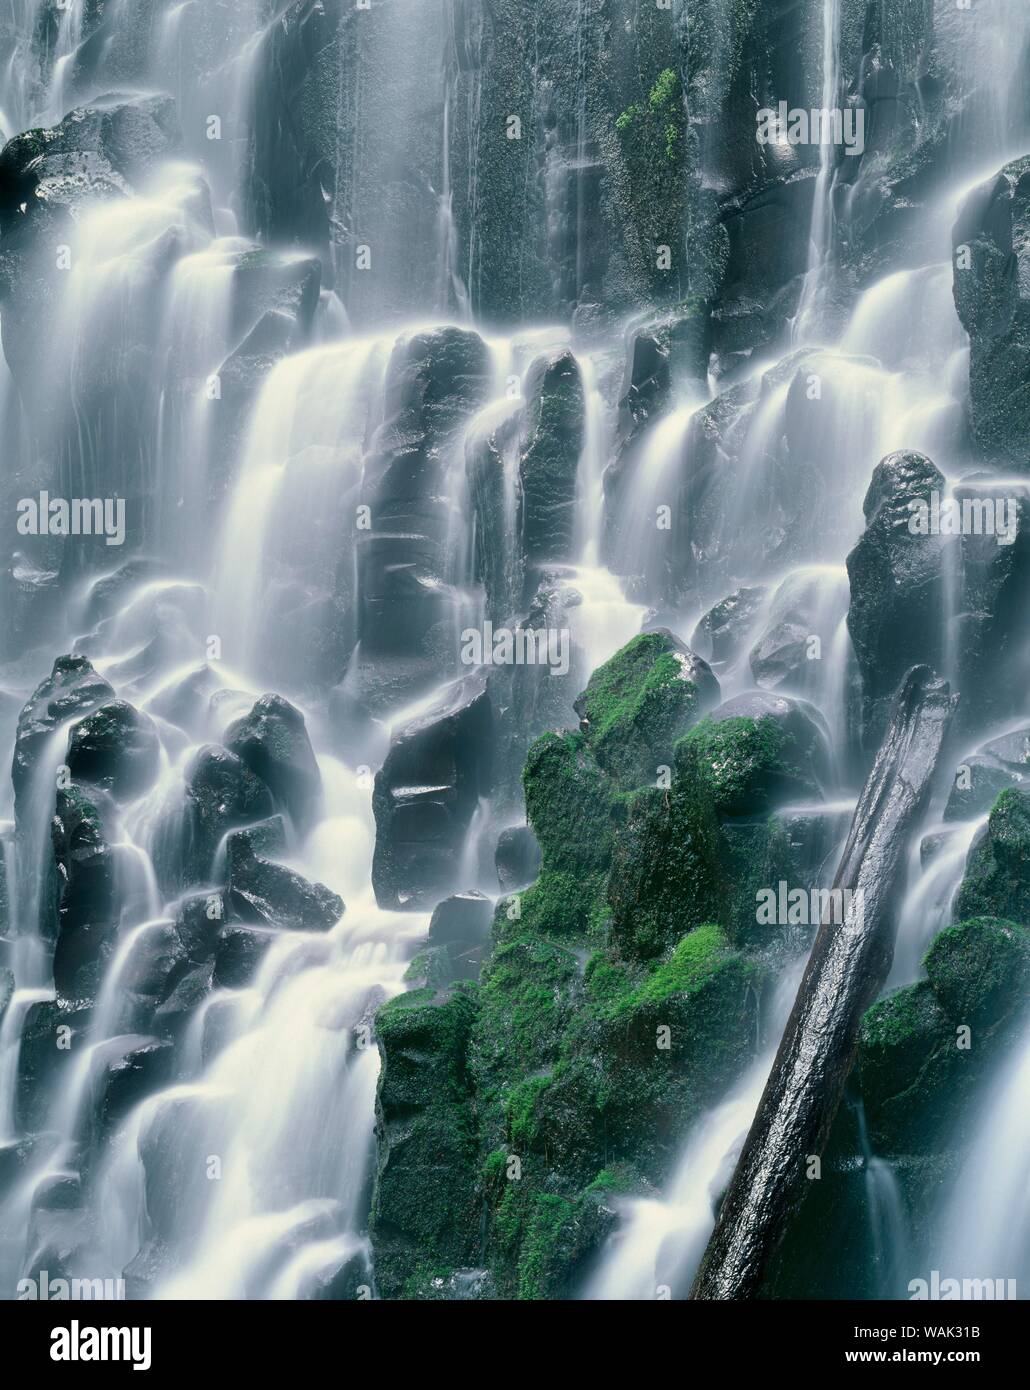 USA (Oregon), Mount Hood National Forest. Mount Hood Wilderness, Ramona Falls est formé par un petit ruisseau Tumbling sur une falaise de basalte columnaire moussus. Banque D'Images